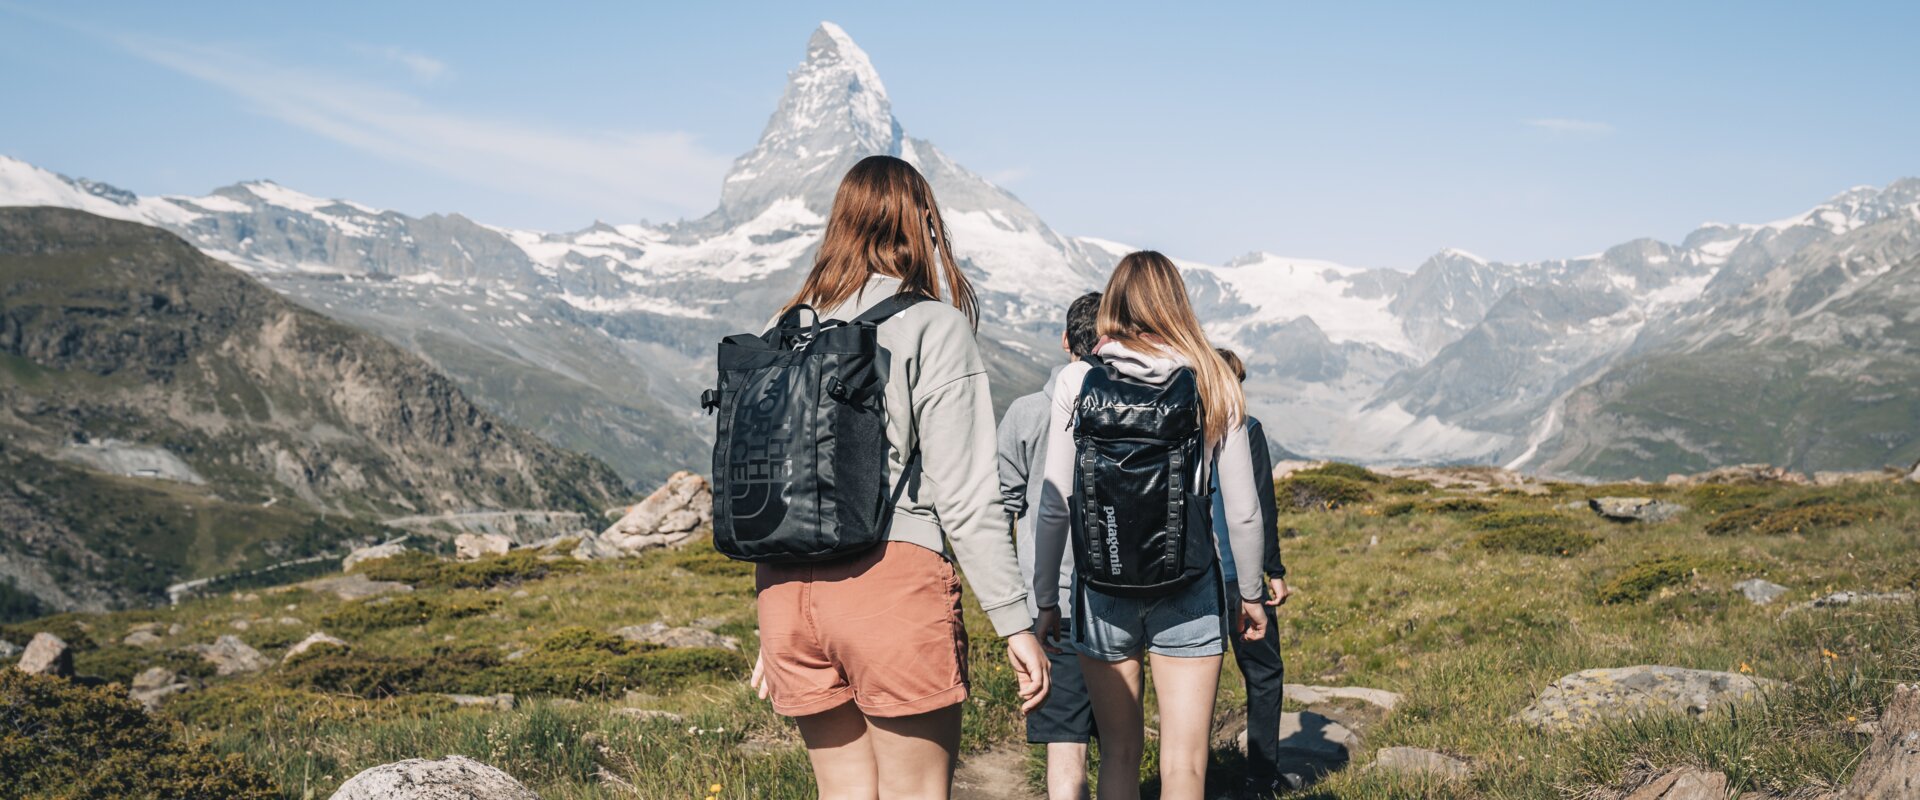 Hiking with a view of the Matterhorn  | © Gabriel Perren